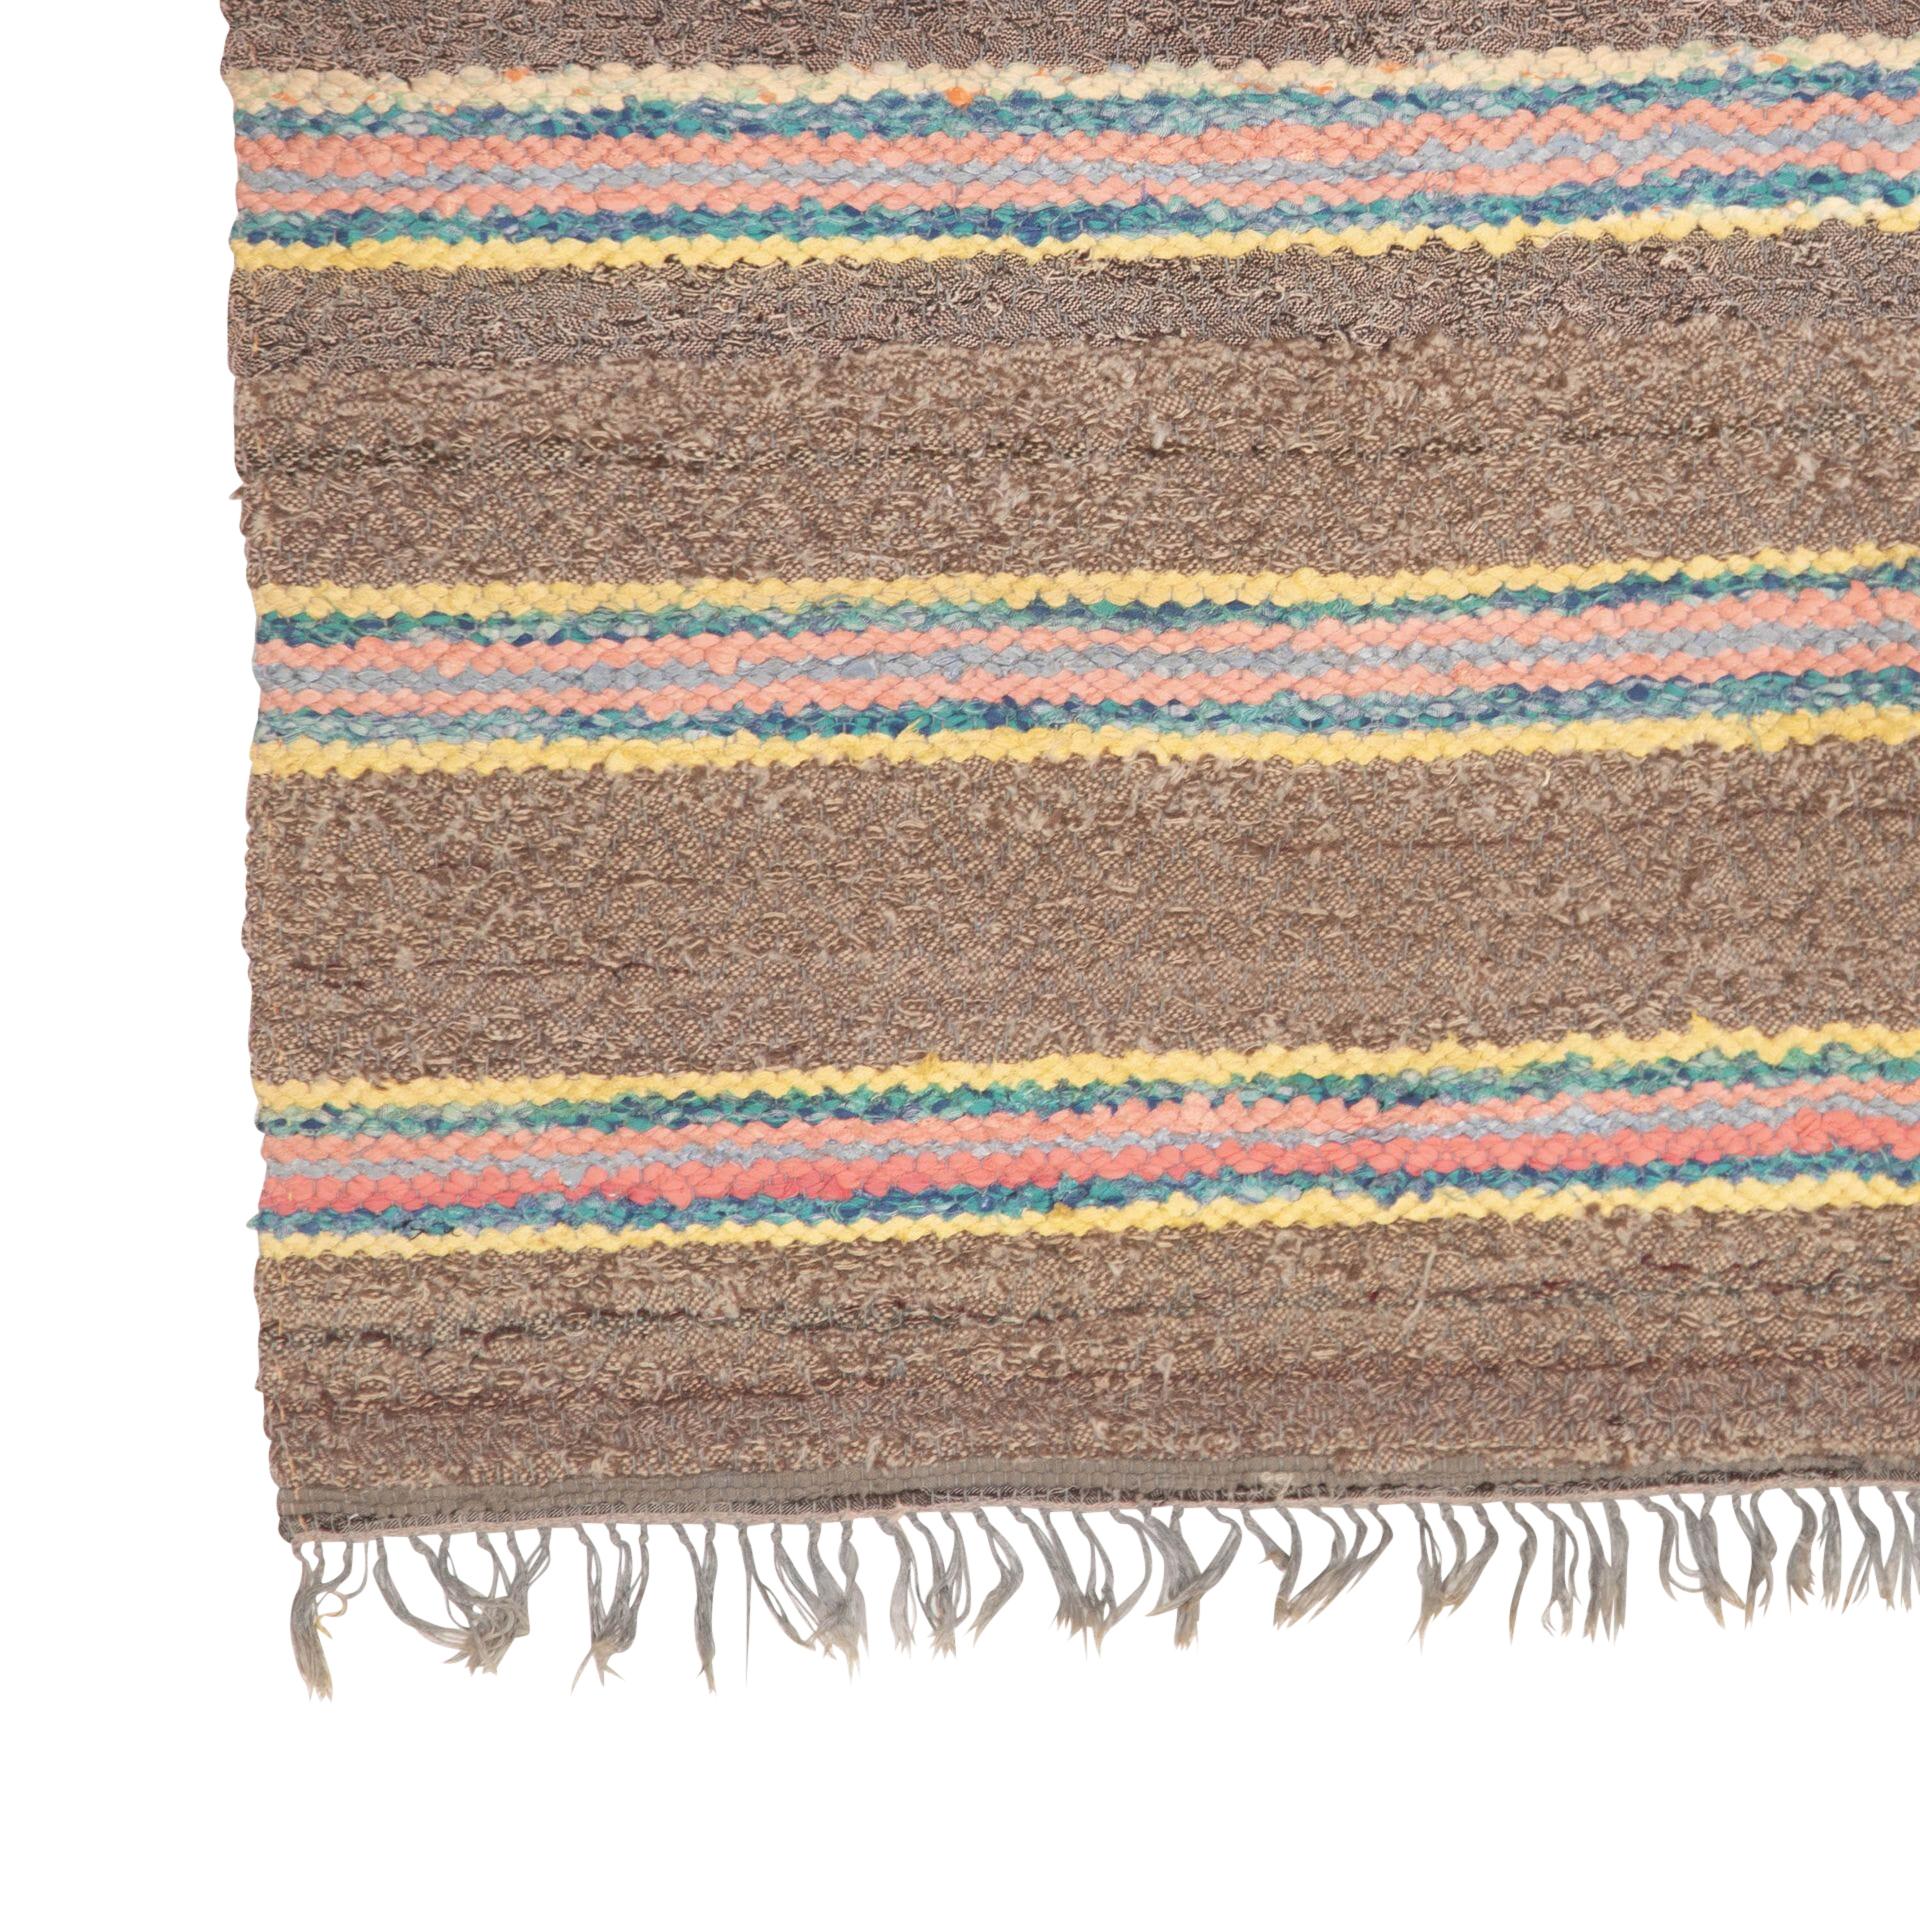 Traditioneller schwedischer Teppich des 20. Jahrhunderts, braun, rosa, orange, blau, gelb.